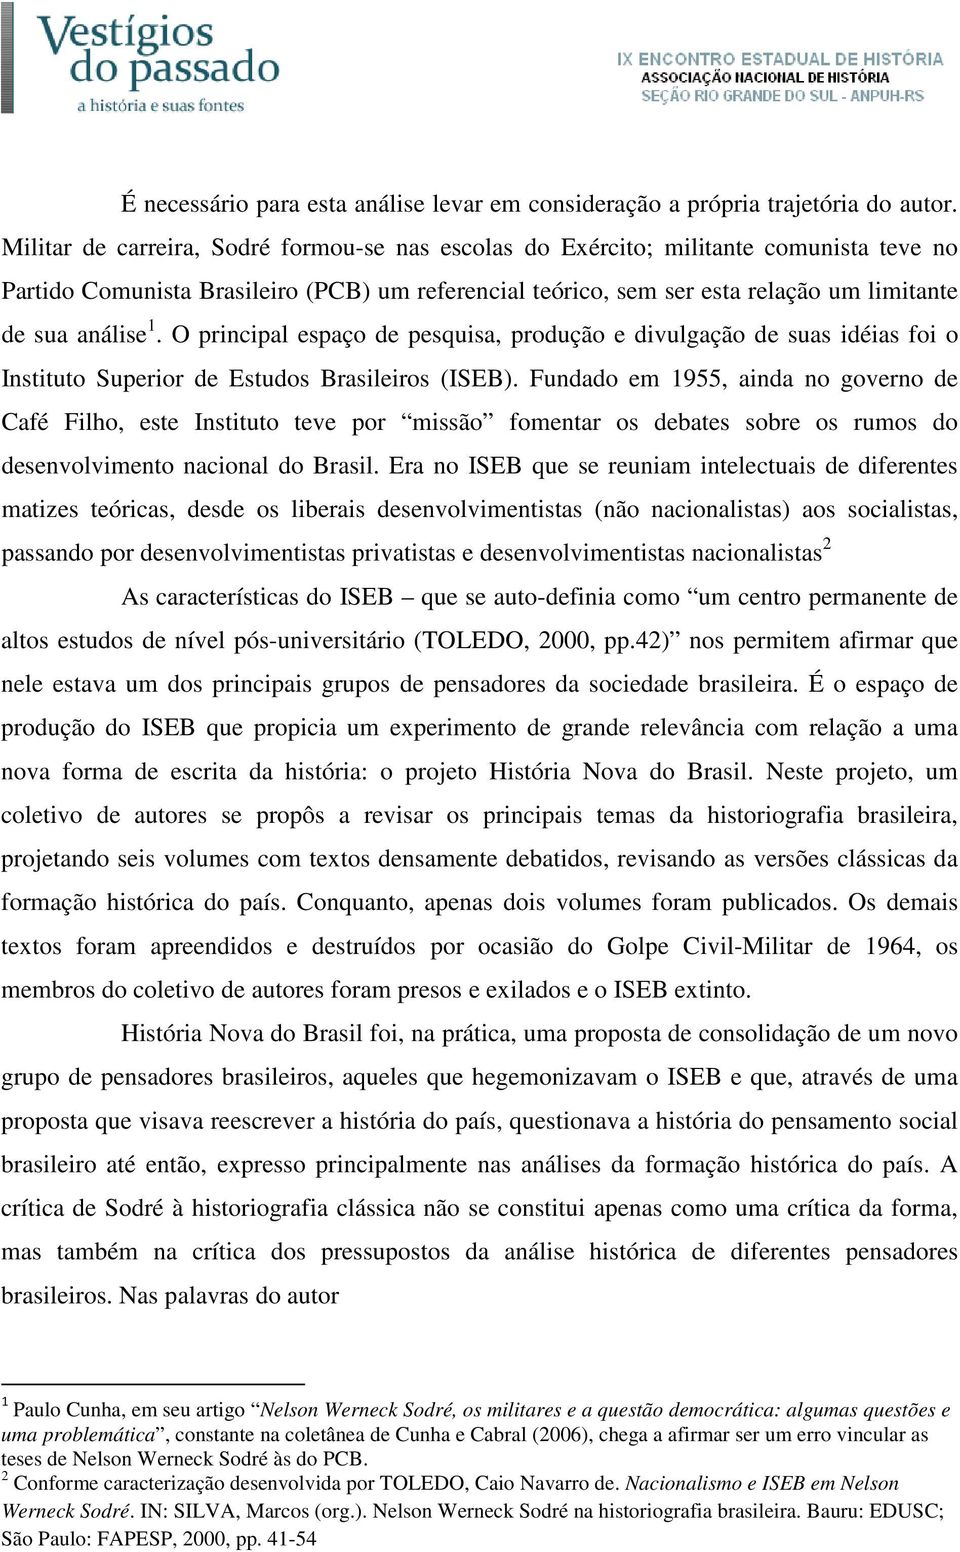 O principal espaço de pesquisa, produção e divulgação de suas idéias foi o Instituto Superior de Estudos Brasileiros (ISEB).